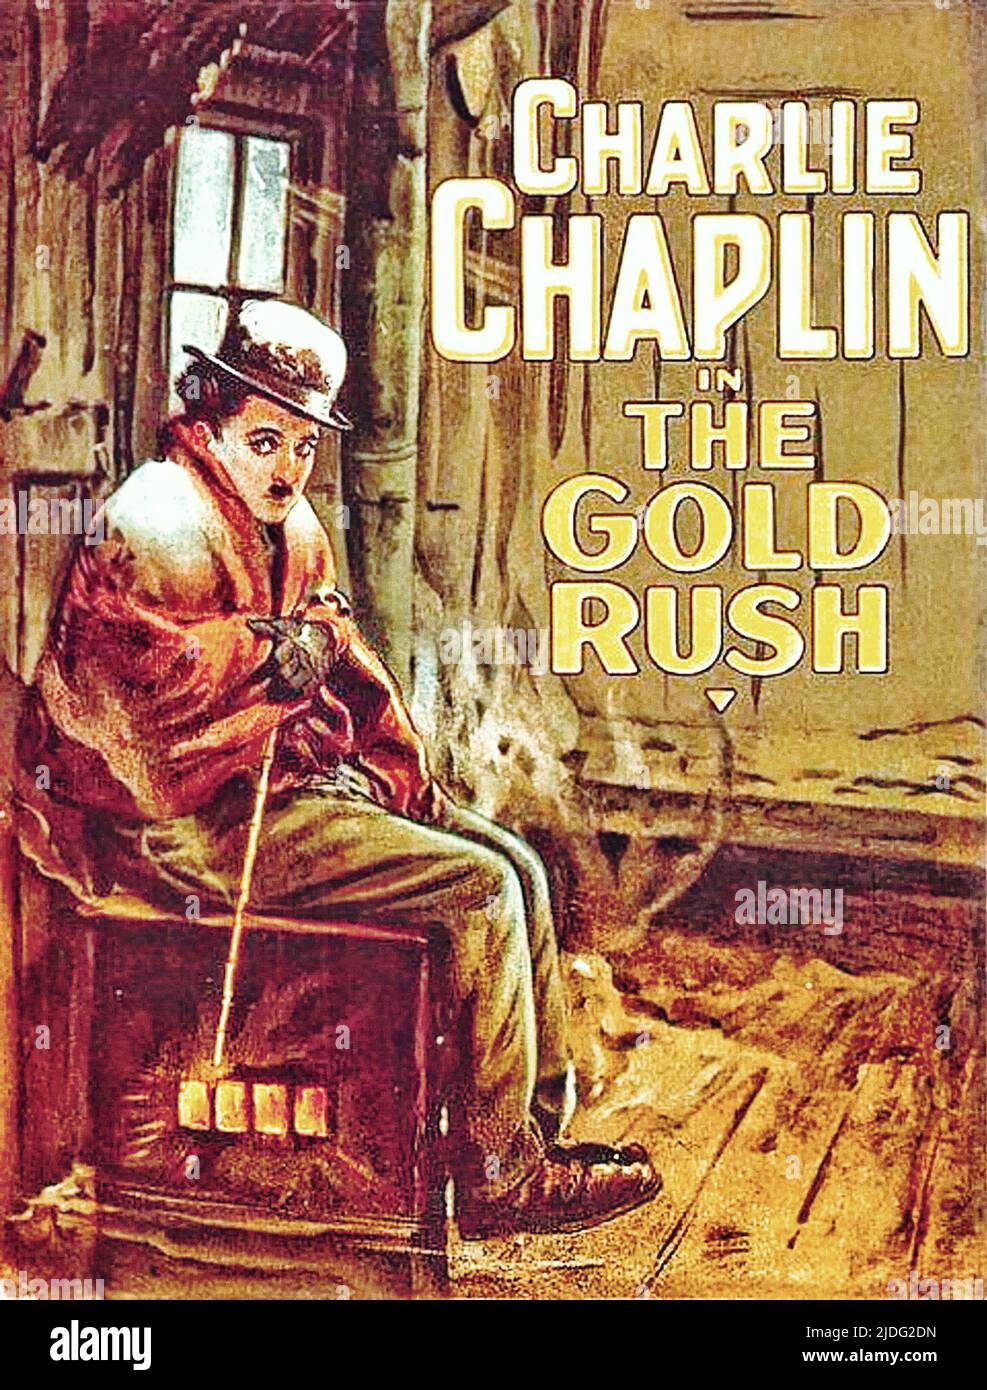 Ein Plakat für Charlie Chaplin Film der Goldrausch. Stockfoto